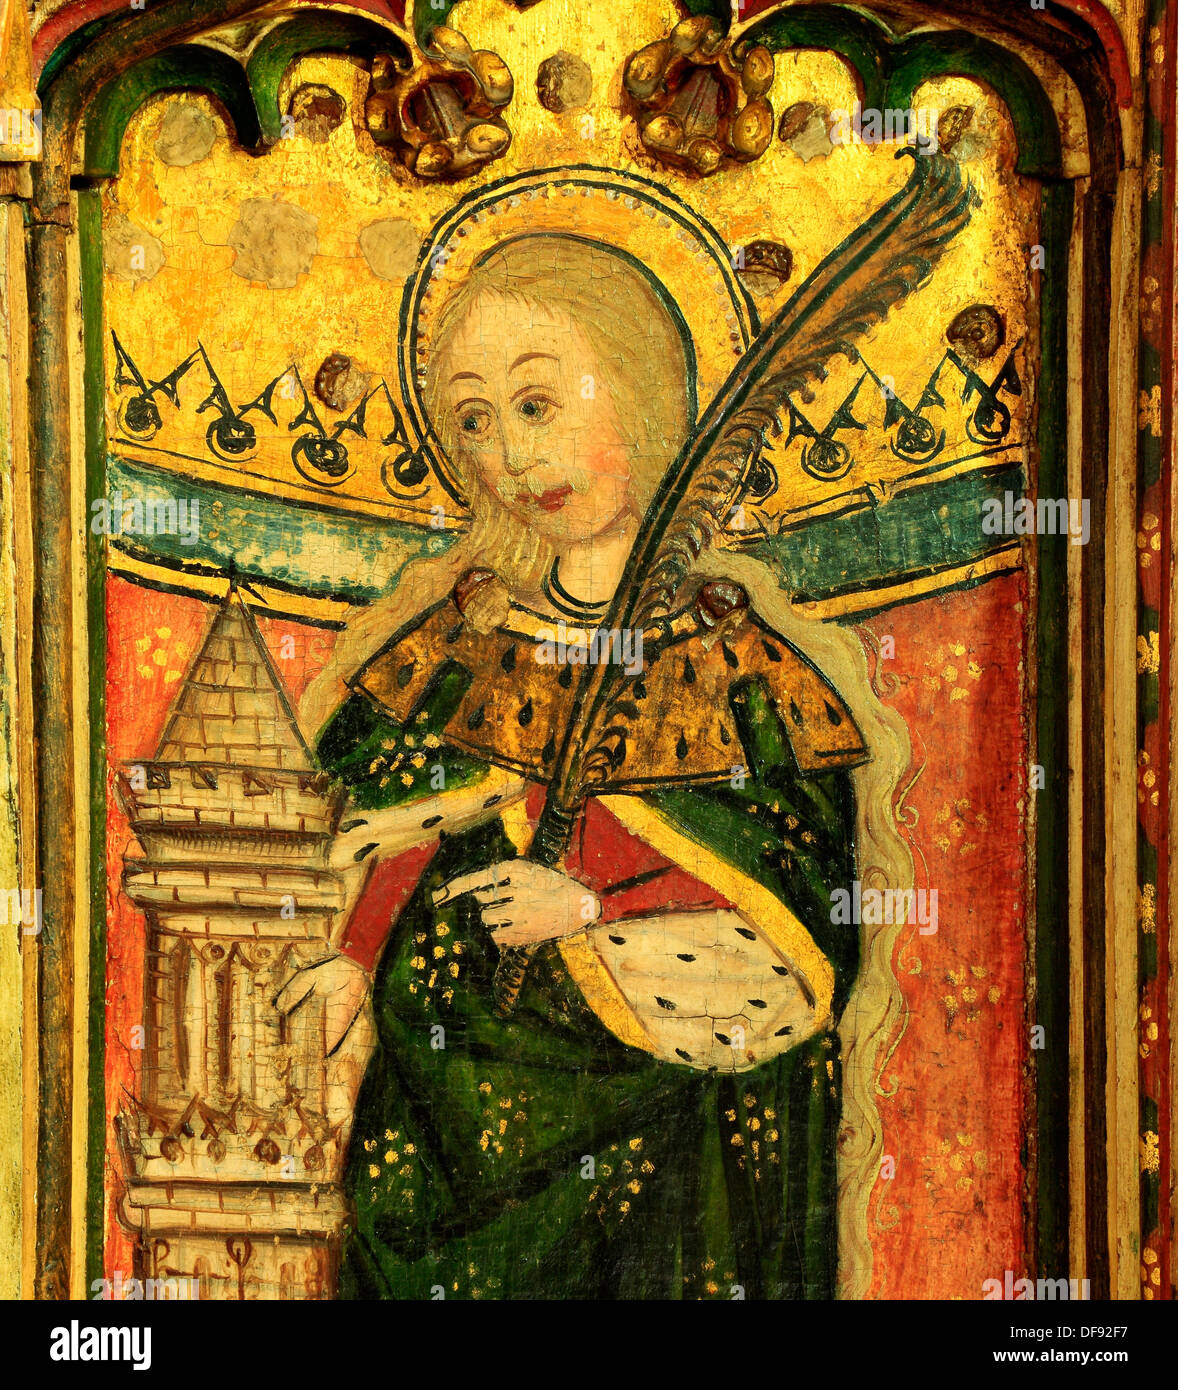 Auge, Suffolk, mittelalterliche Lettner Malerei 1480, Heiligen St. Barbara mit Turm und Palmzweig, Gemälde Kunst christlicher Heiliger Stockfoto